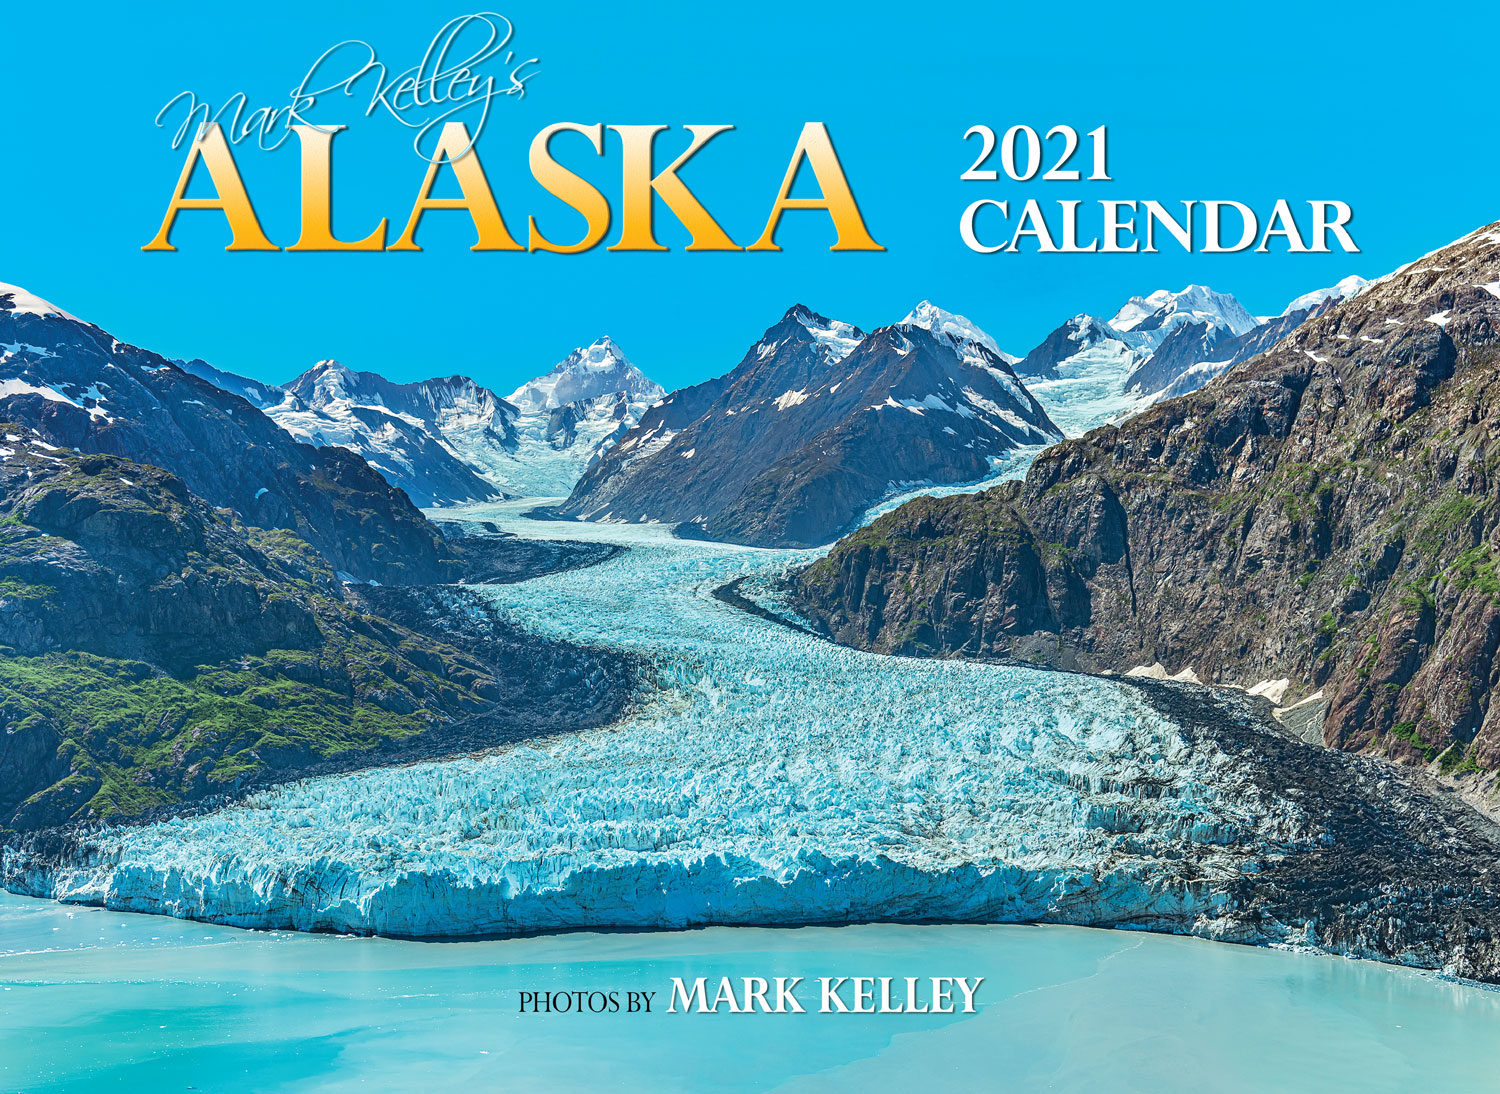 The 2021 Alaska Calendar